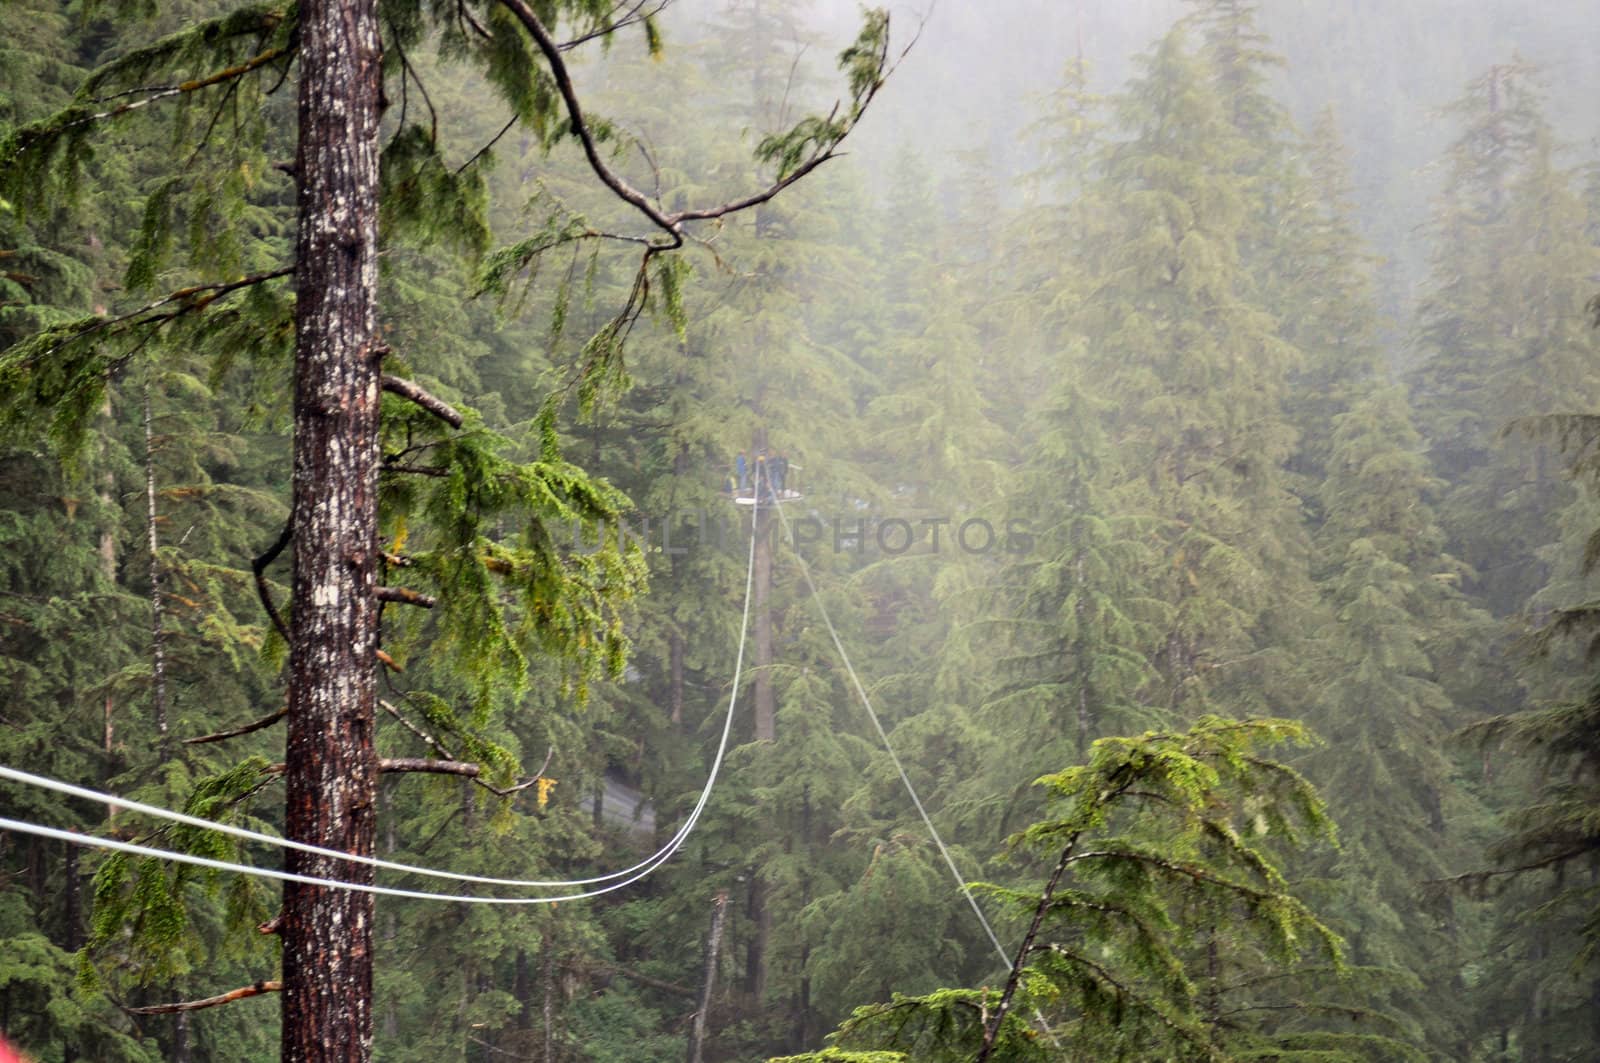 Ketchikan ziplining by RefocusPhoto